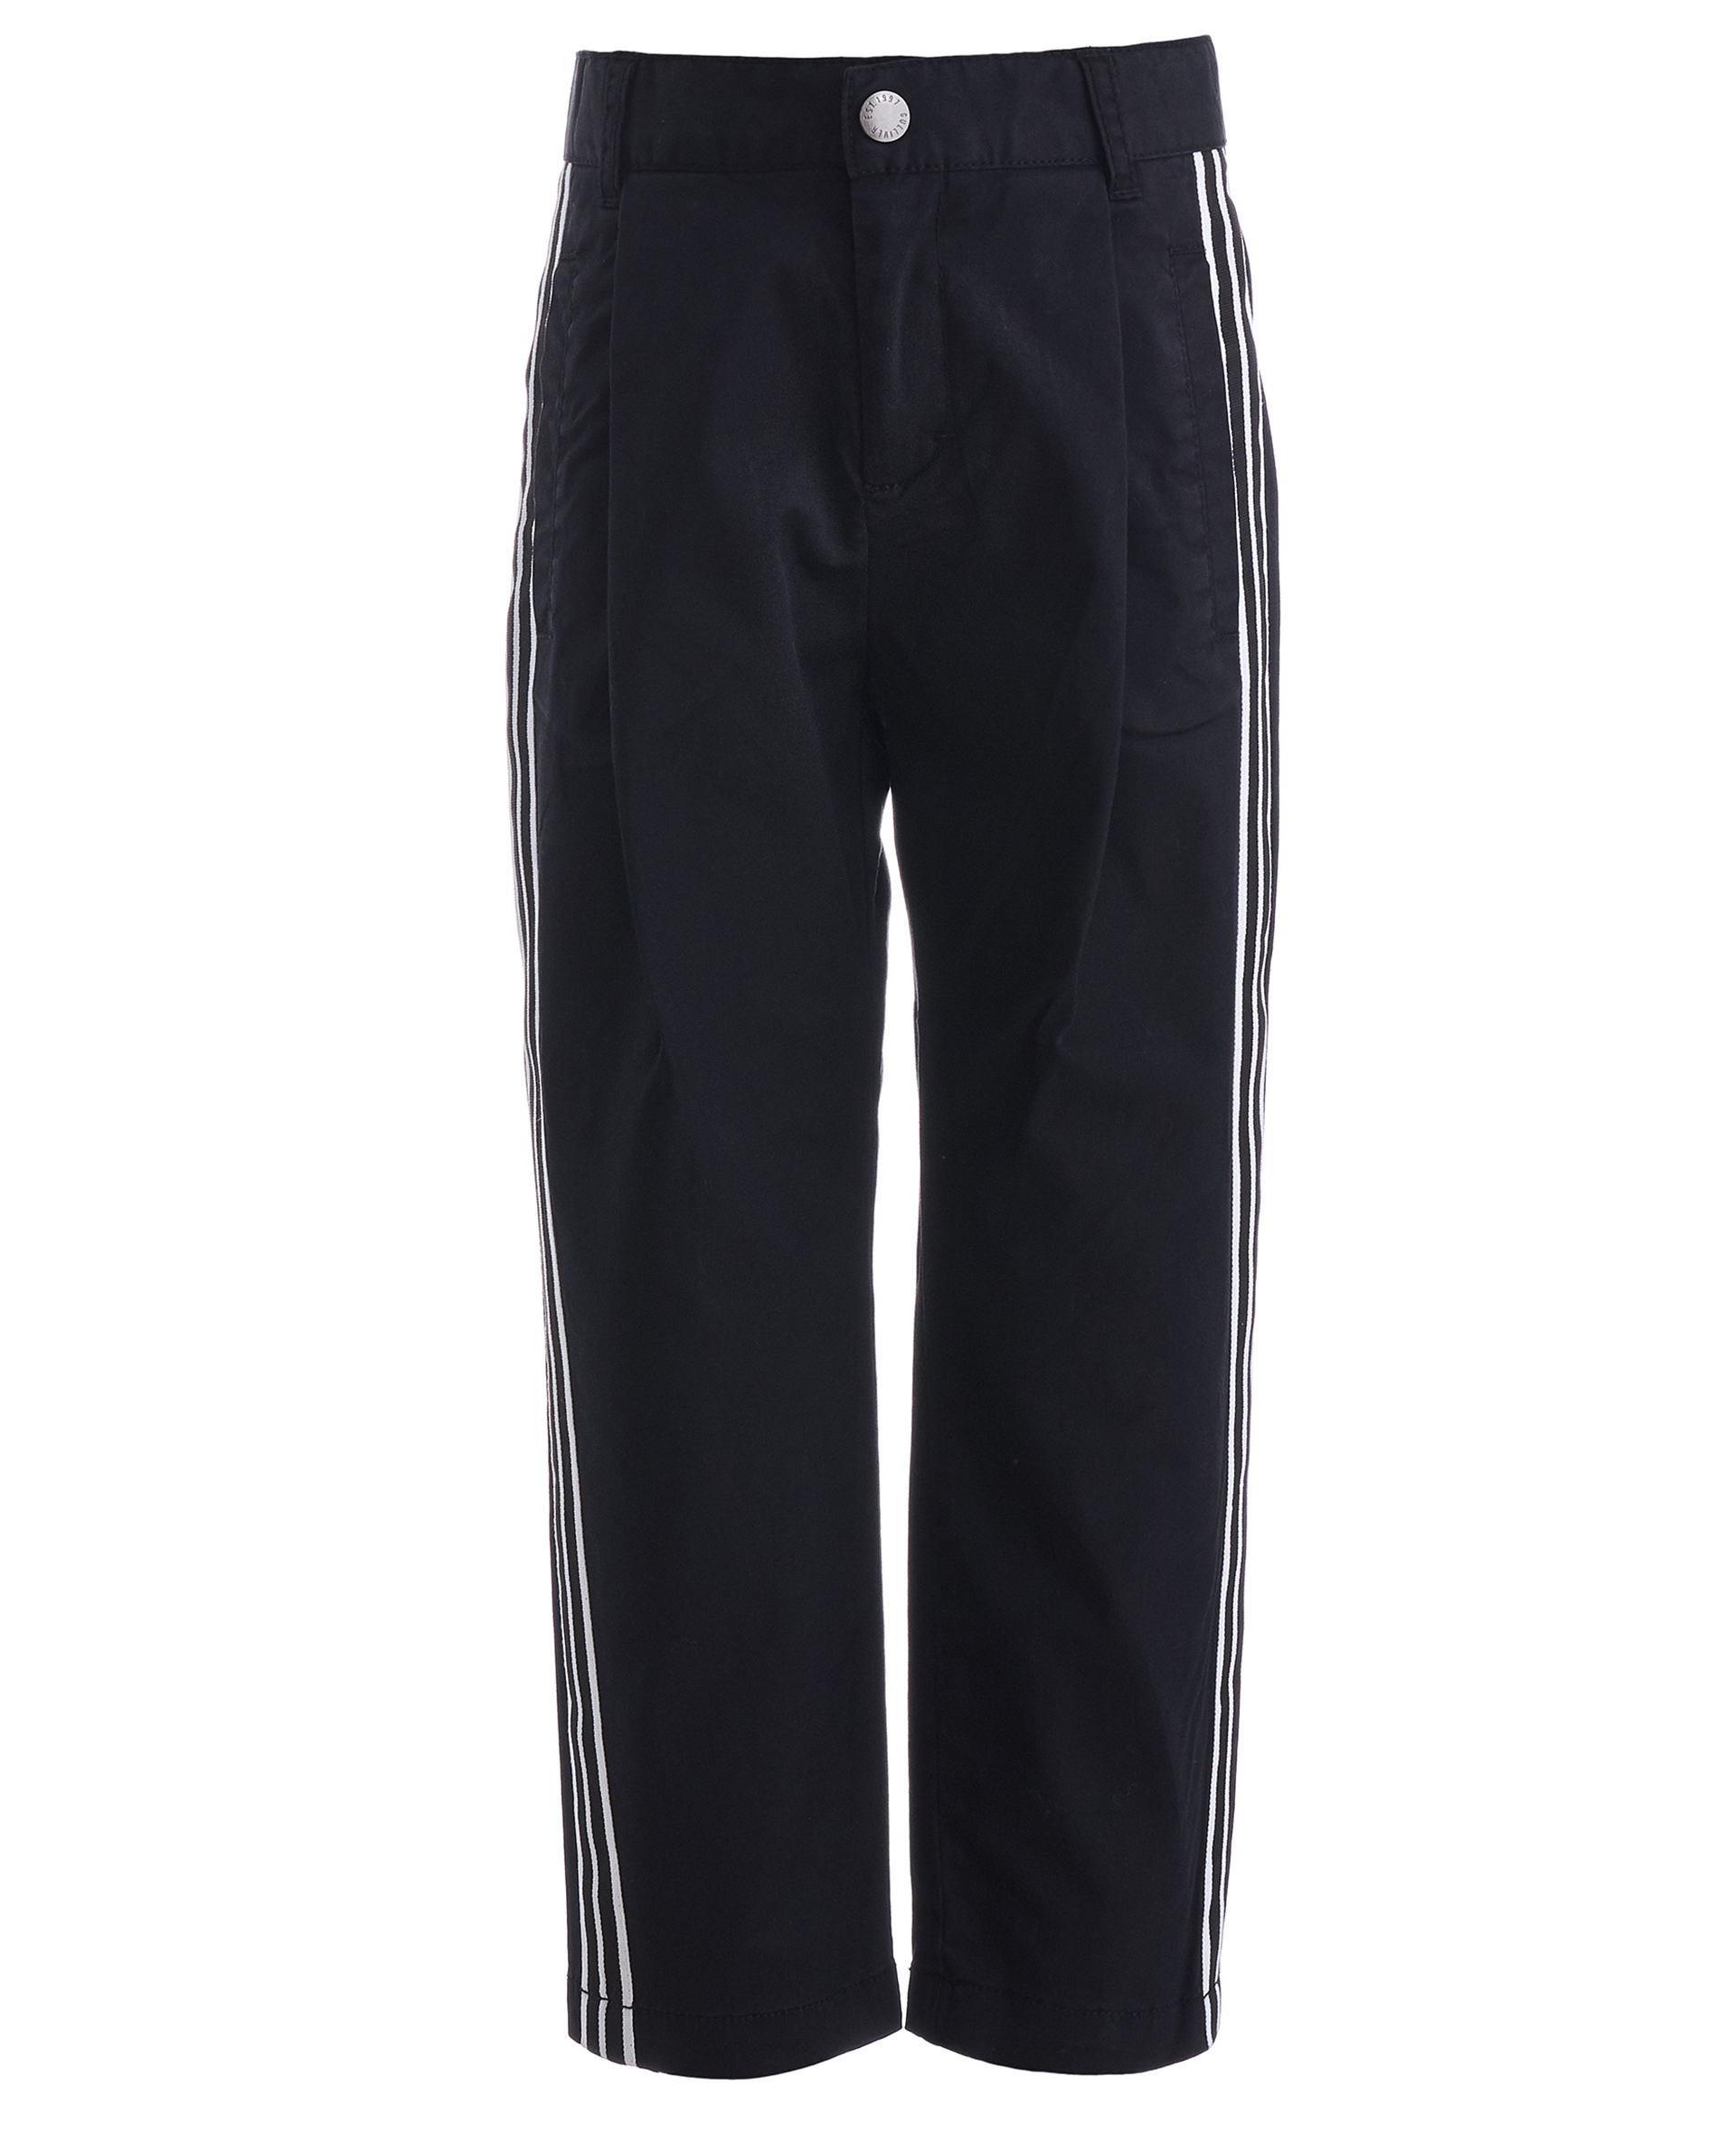 Черные брюки с лампасами Gulliver 11905BMC6301, размер 104, цвет черный - фото 1